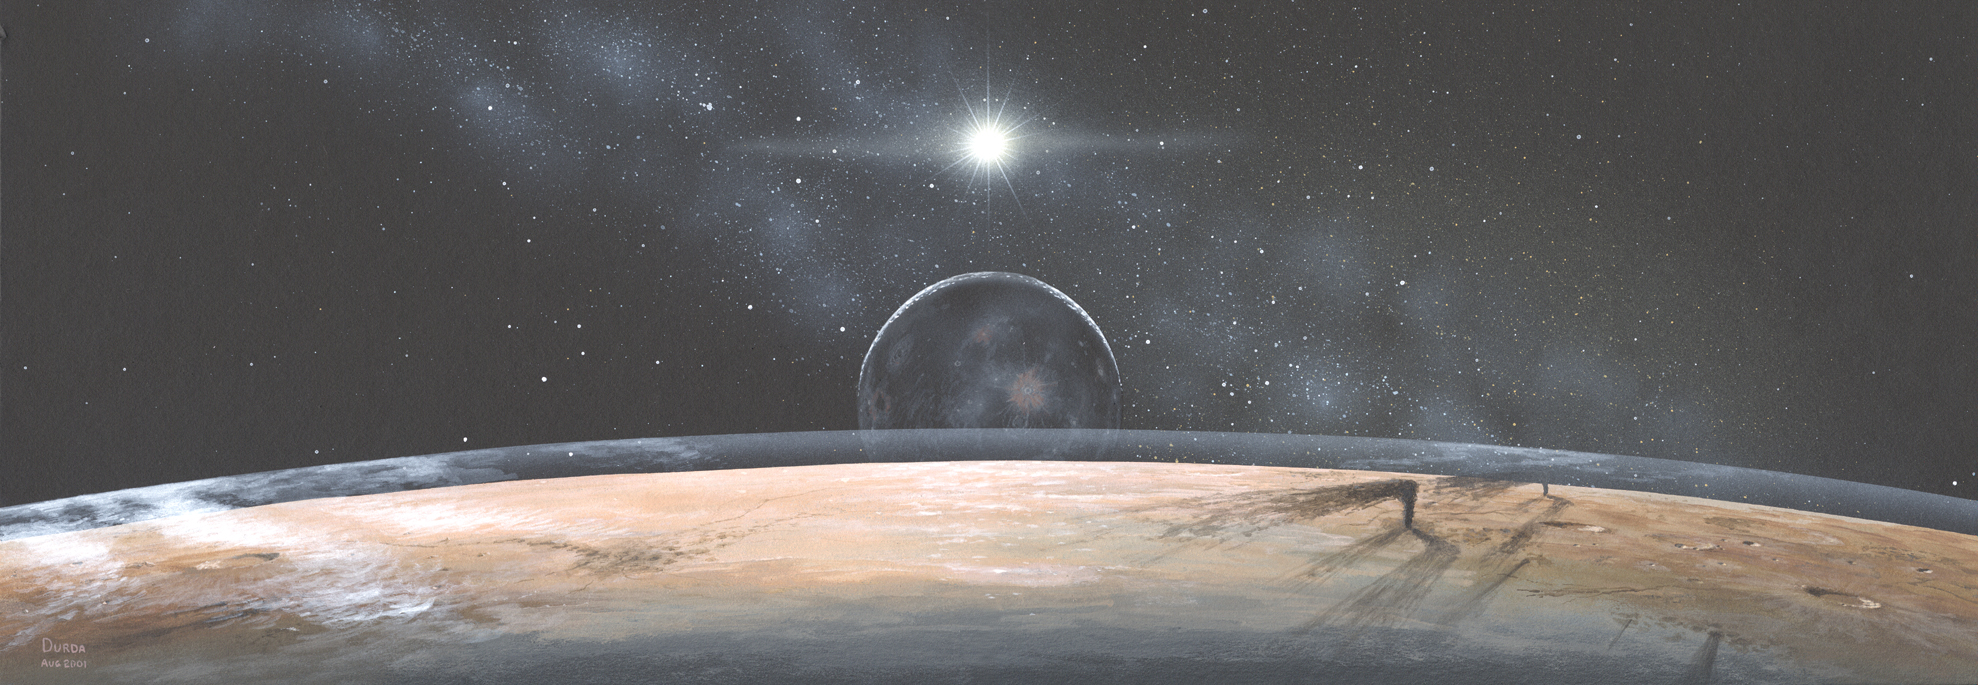 Pluto: New Horizons